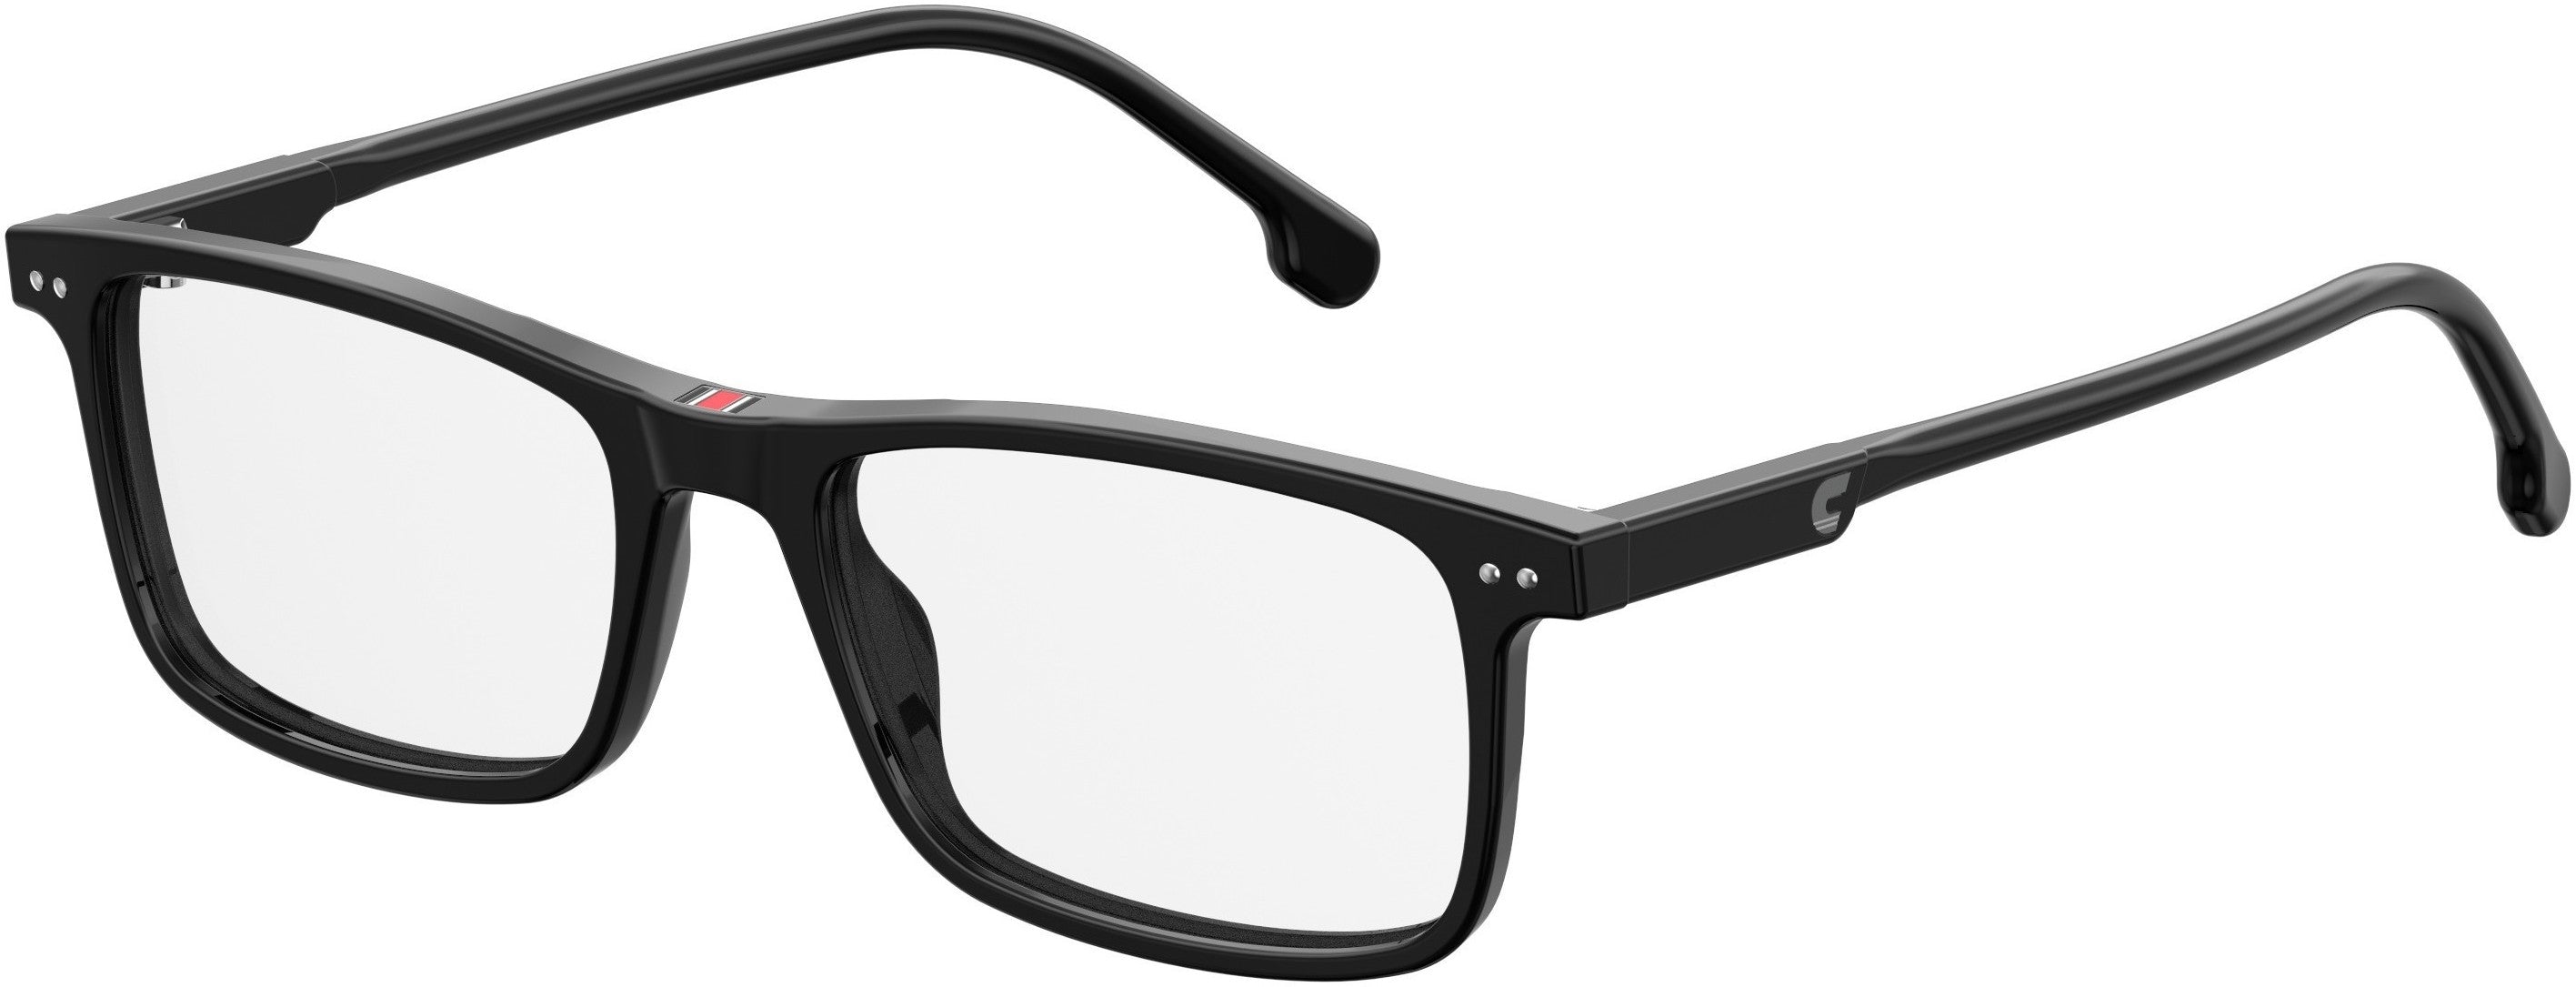  Carrera 2001T/v Rectangular Eyeglasses 0807-0807  Black (00 Demo Lens)